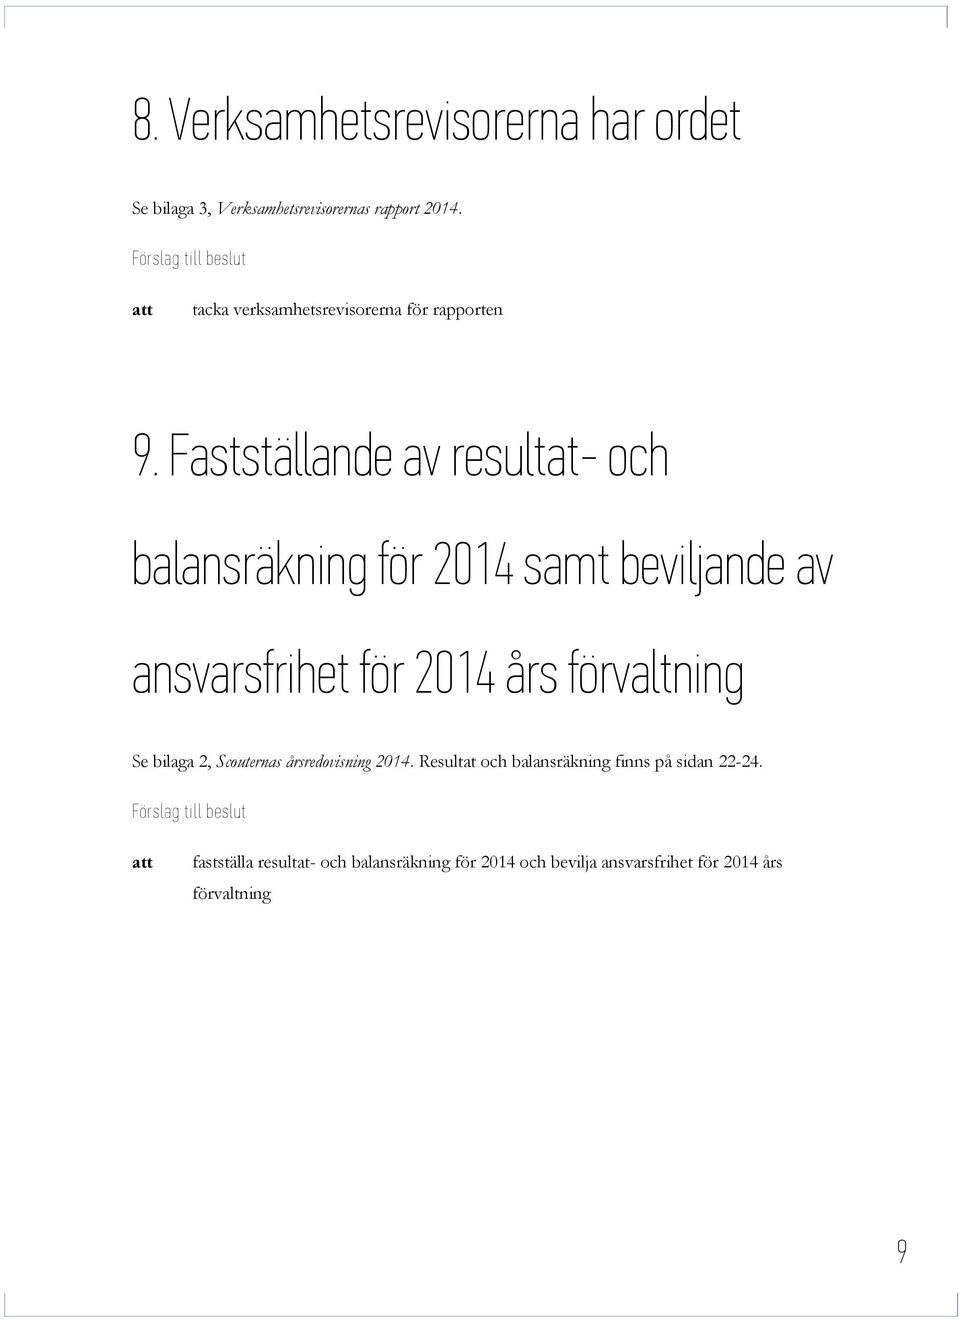 Fastställande av resultat- och balansräkning för 2014 samt beviljande av ansvarsfrihet för 2014 års